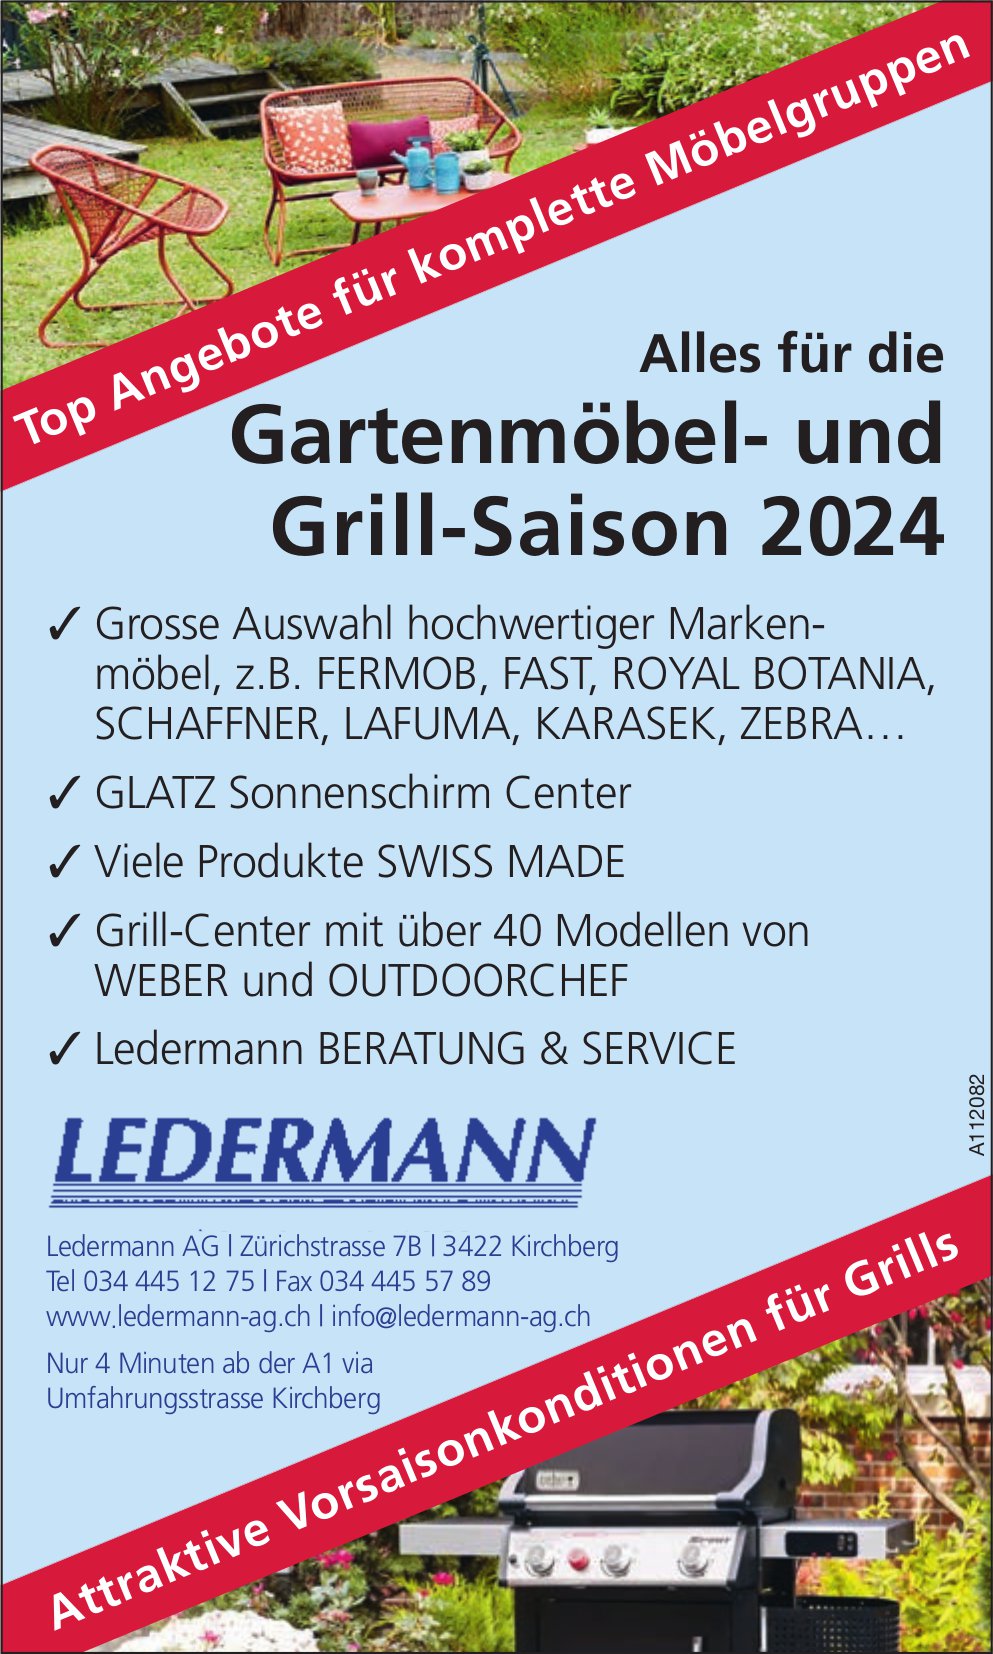 Ledermann AG, Kirchberg - Alles für die Gartenmöbel- und Grill-Saison 2024